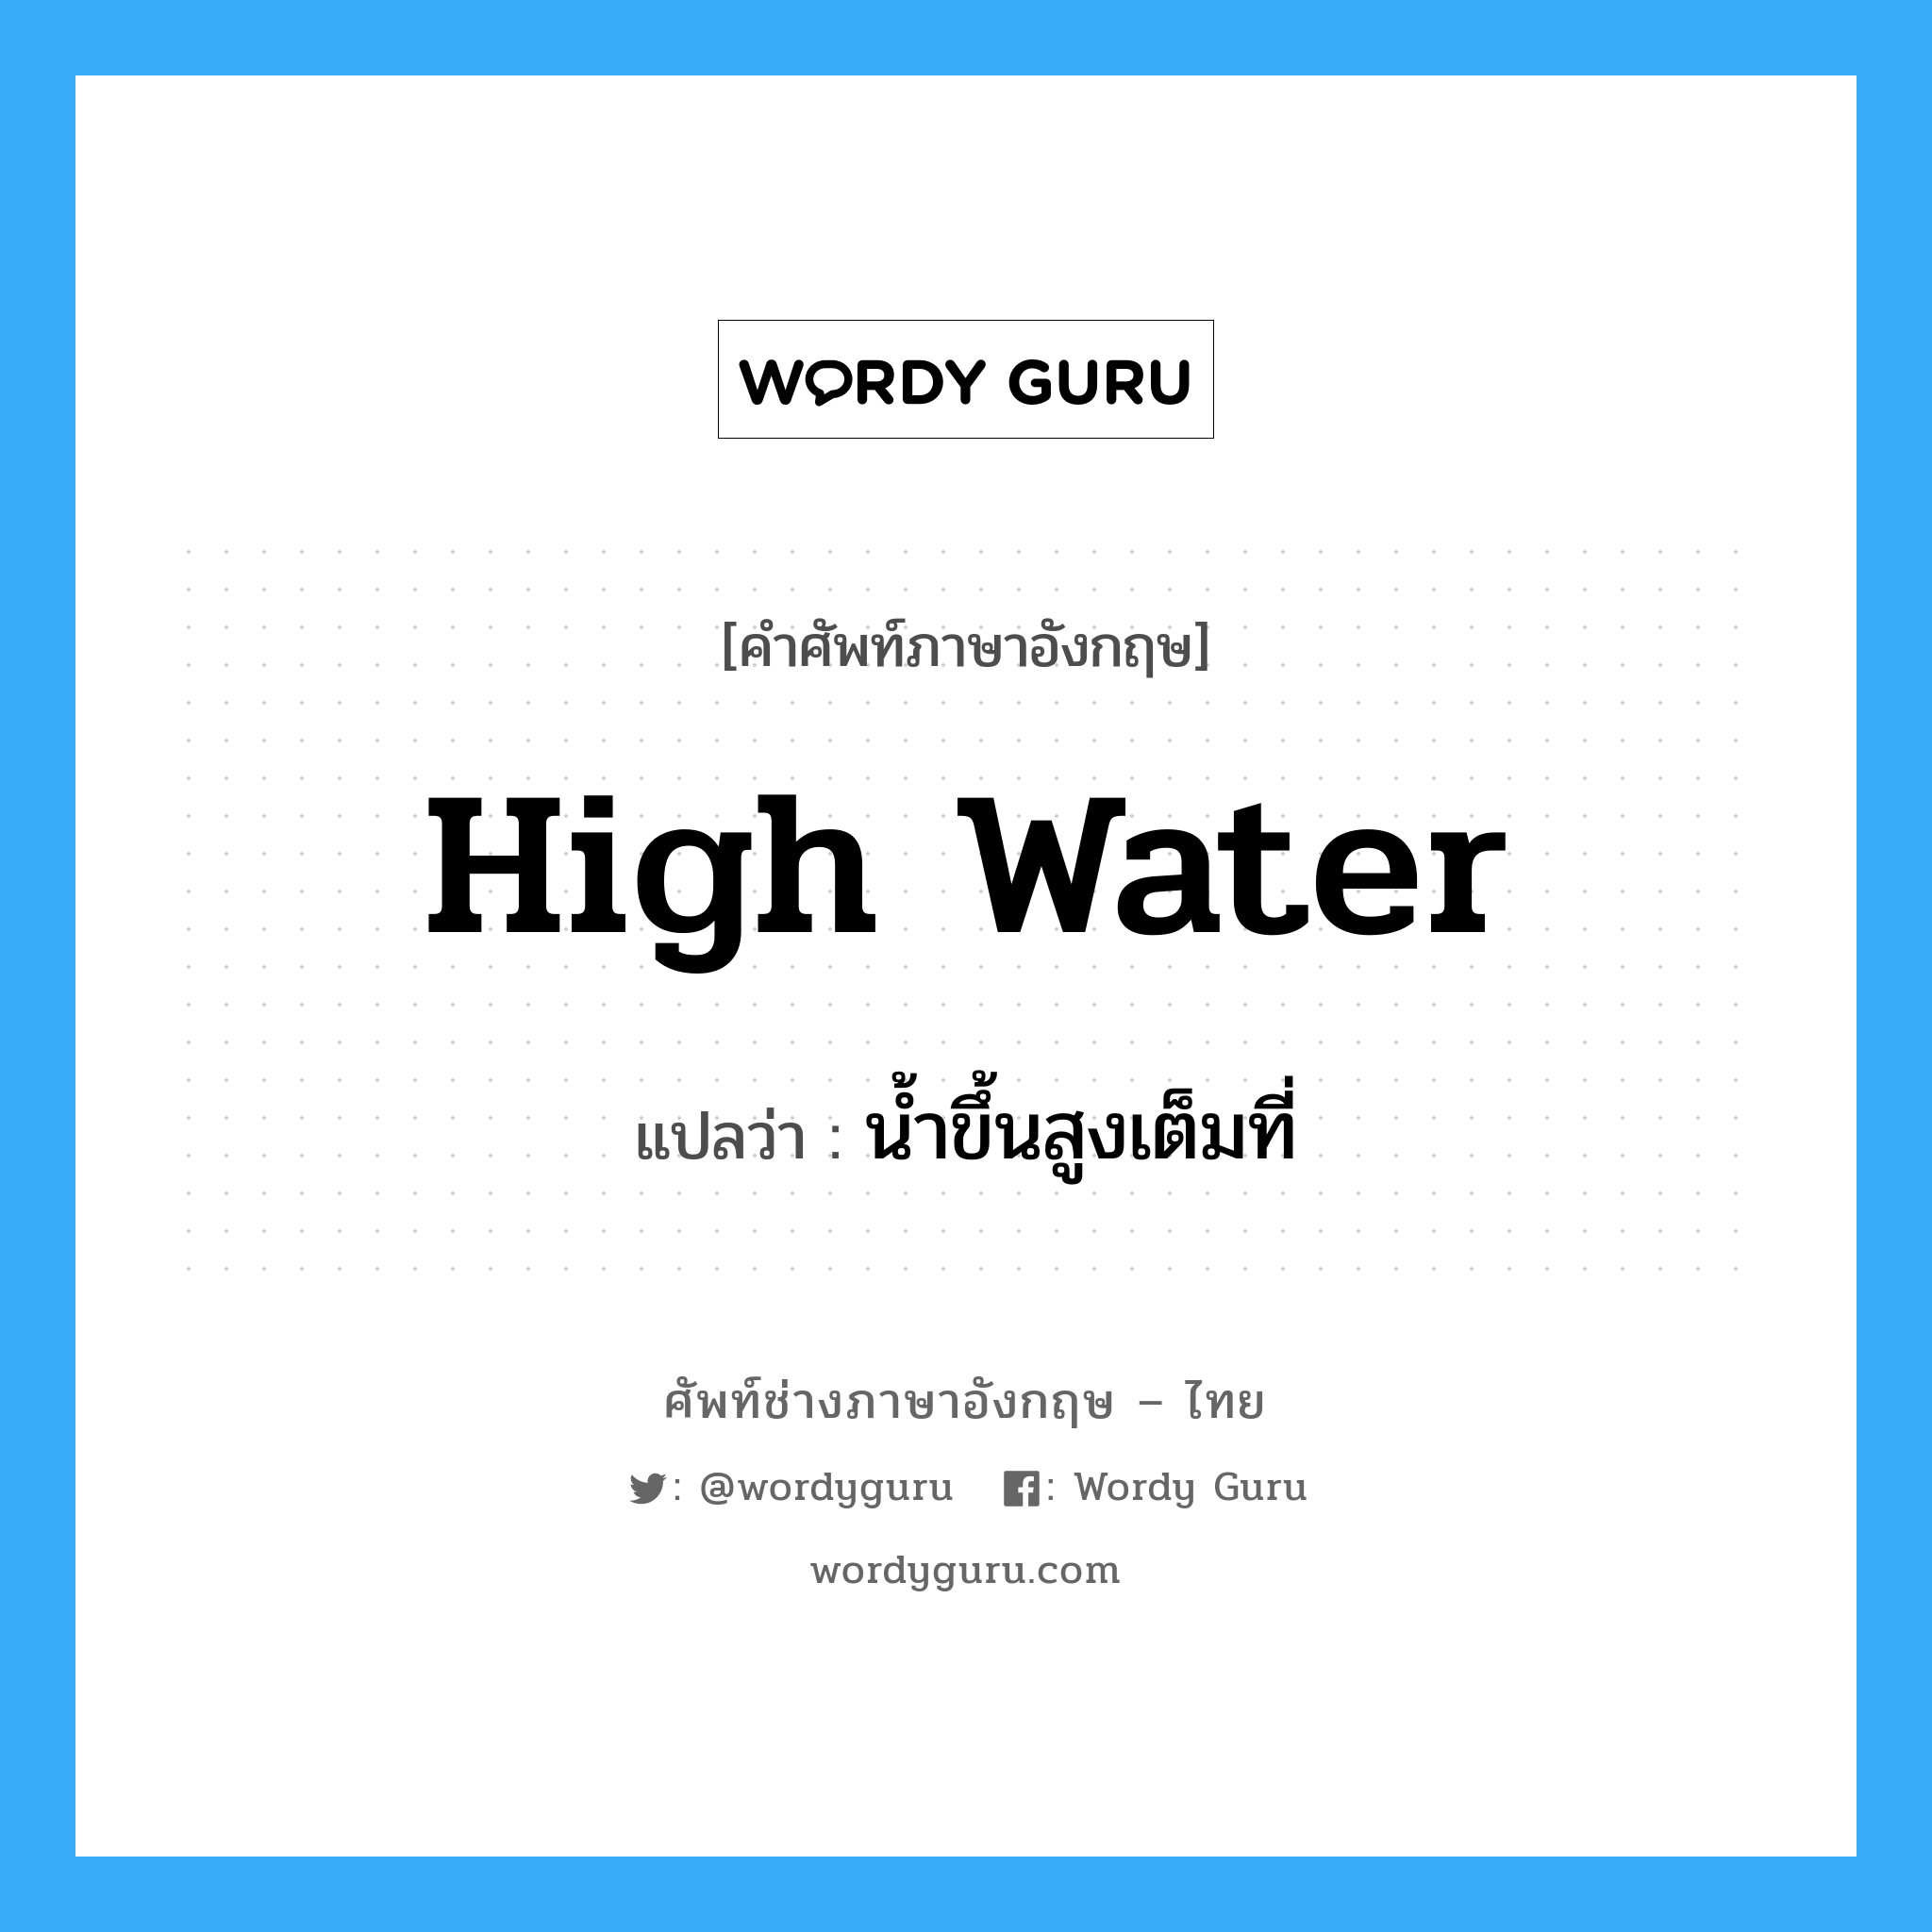 น้ำขึ้นสูงเต็มที่ ภาษาอังกฤษ?, คำศัพท์ช่างภาษาอังกฤษ - ไทย น้ำขึ้นสูงเต็มที่ คำศัพท์ภาษาอังกฤษ น้ำขึ้นสูงเต็มที่ แปลว่า high water